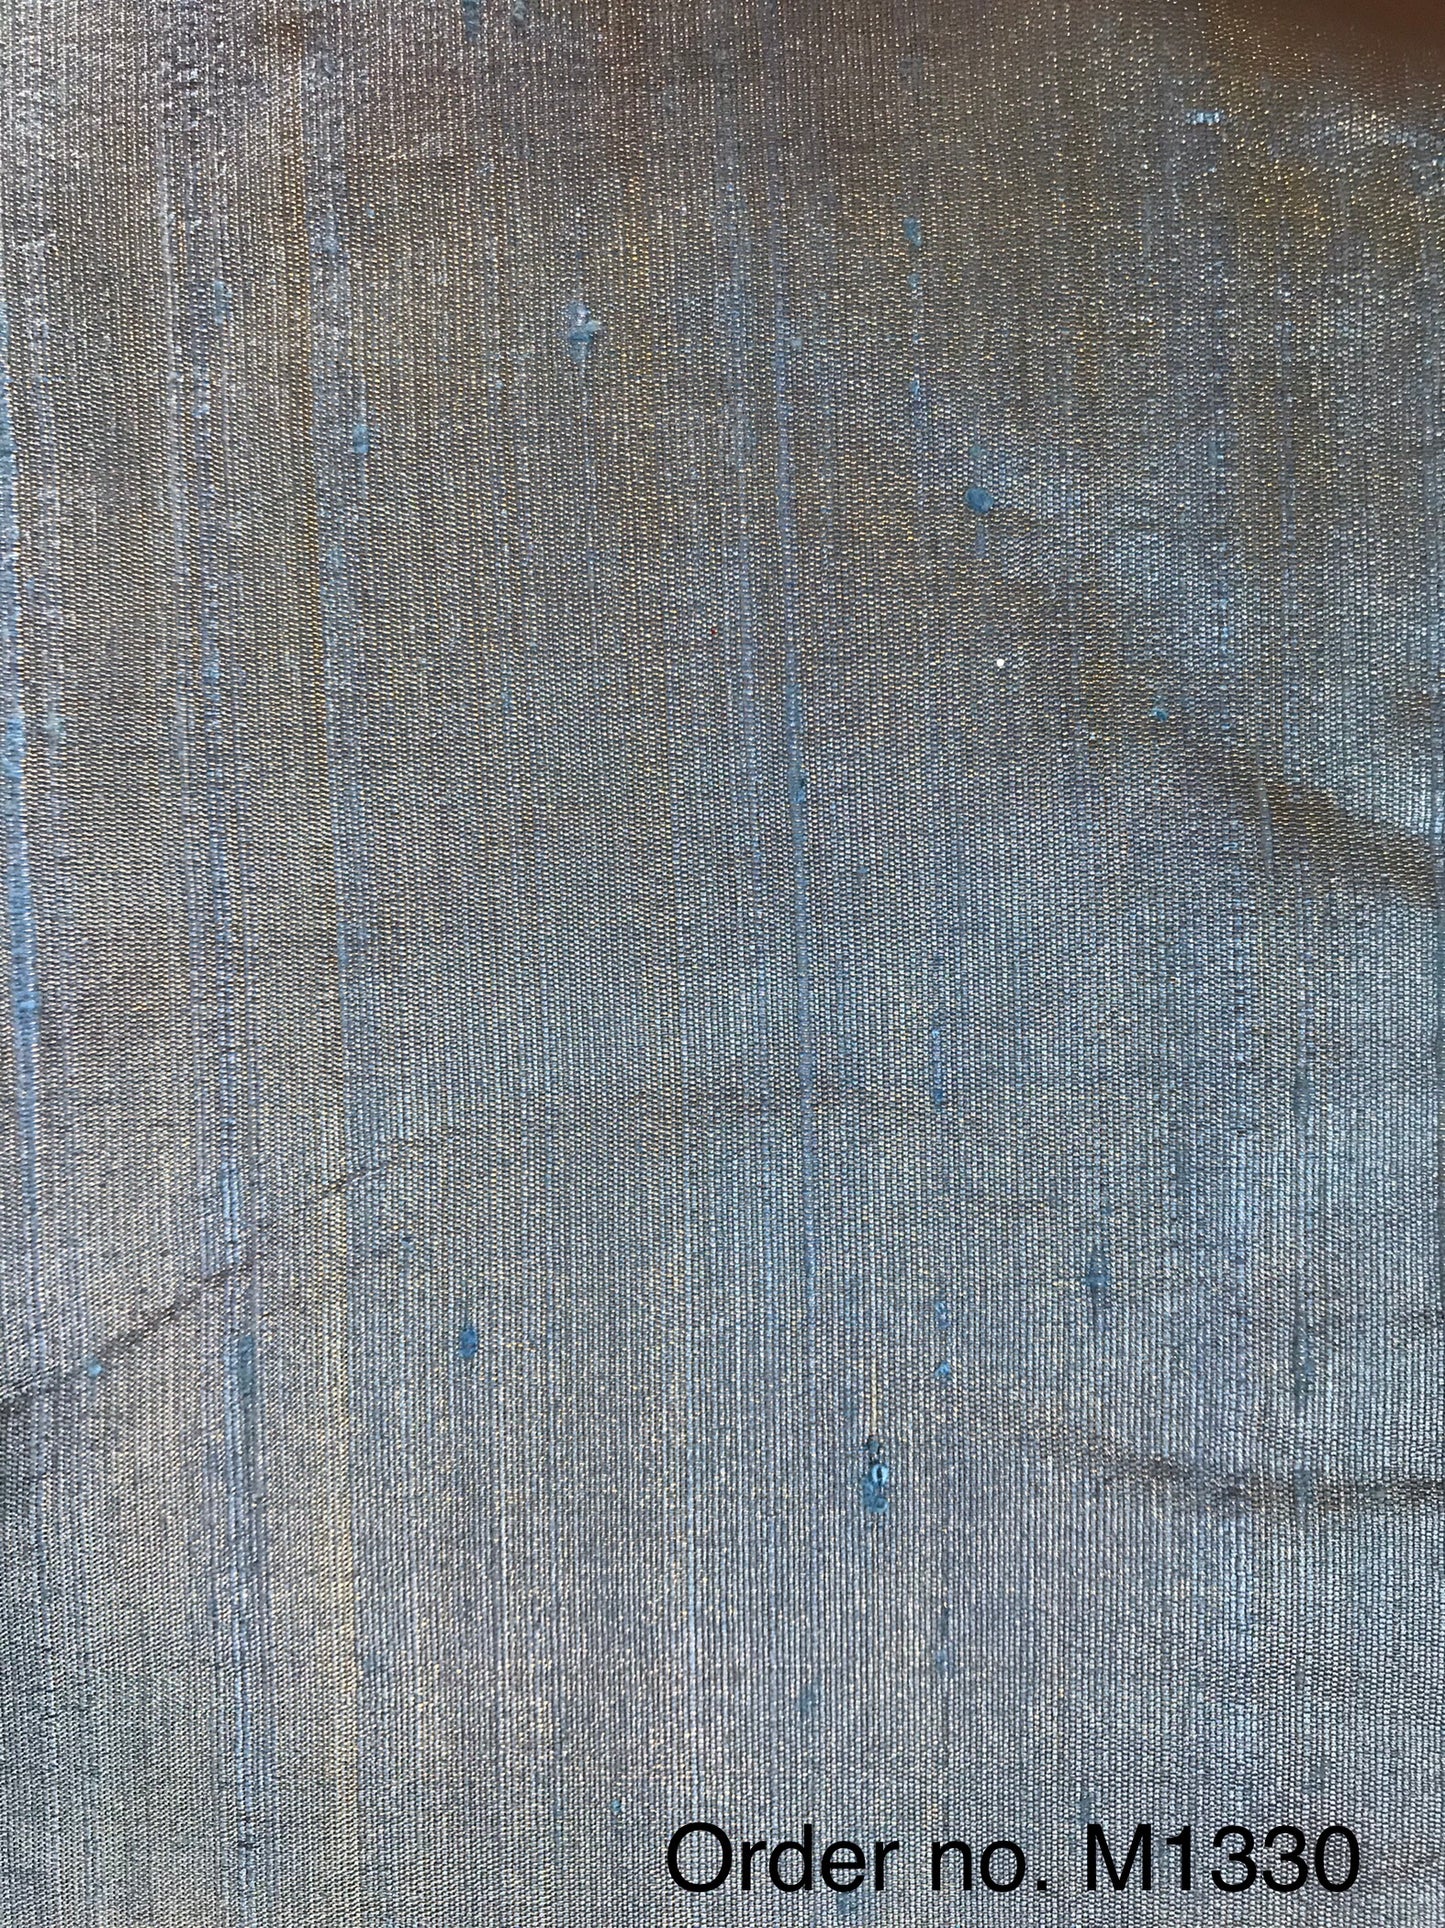 Tissue Raw silk 105gm width 44”